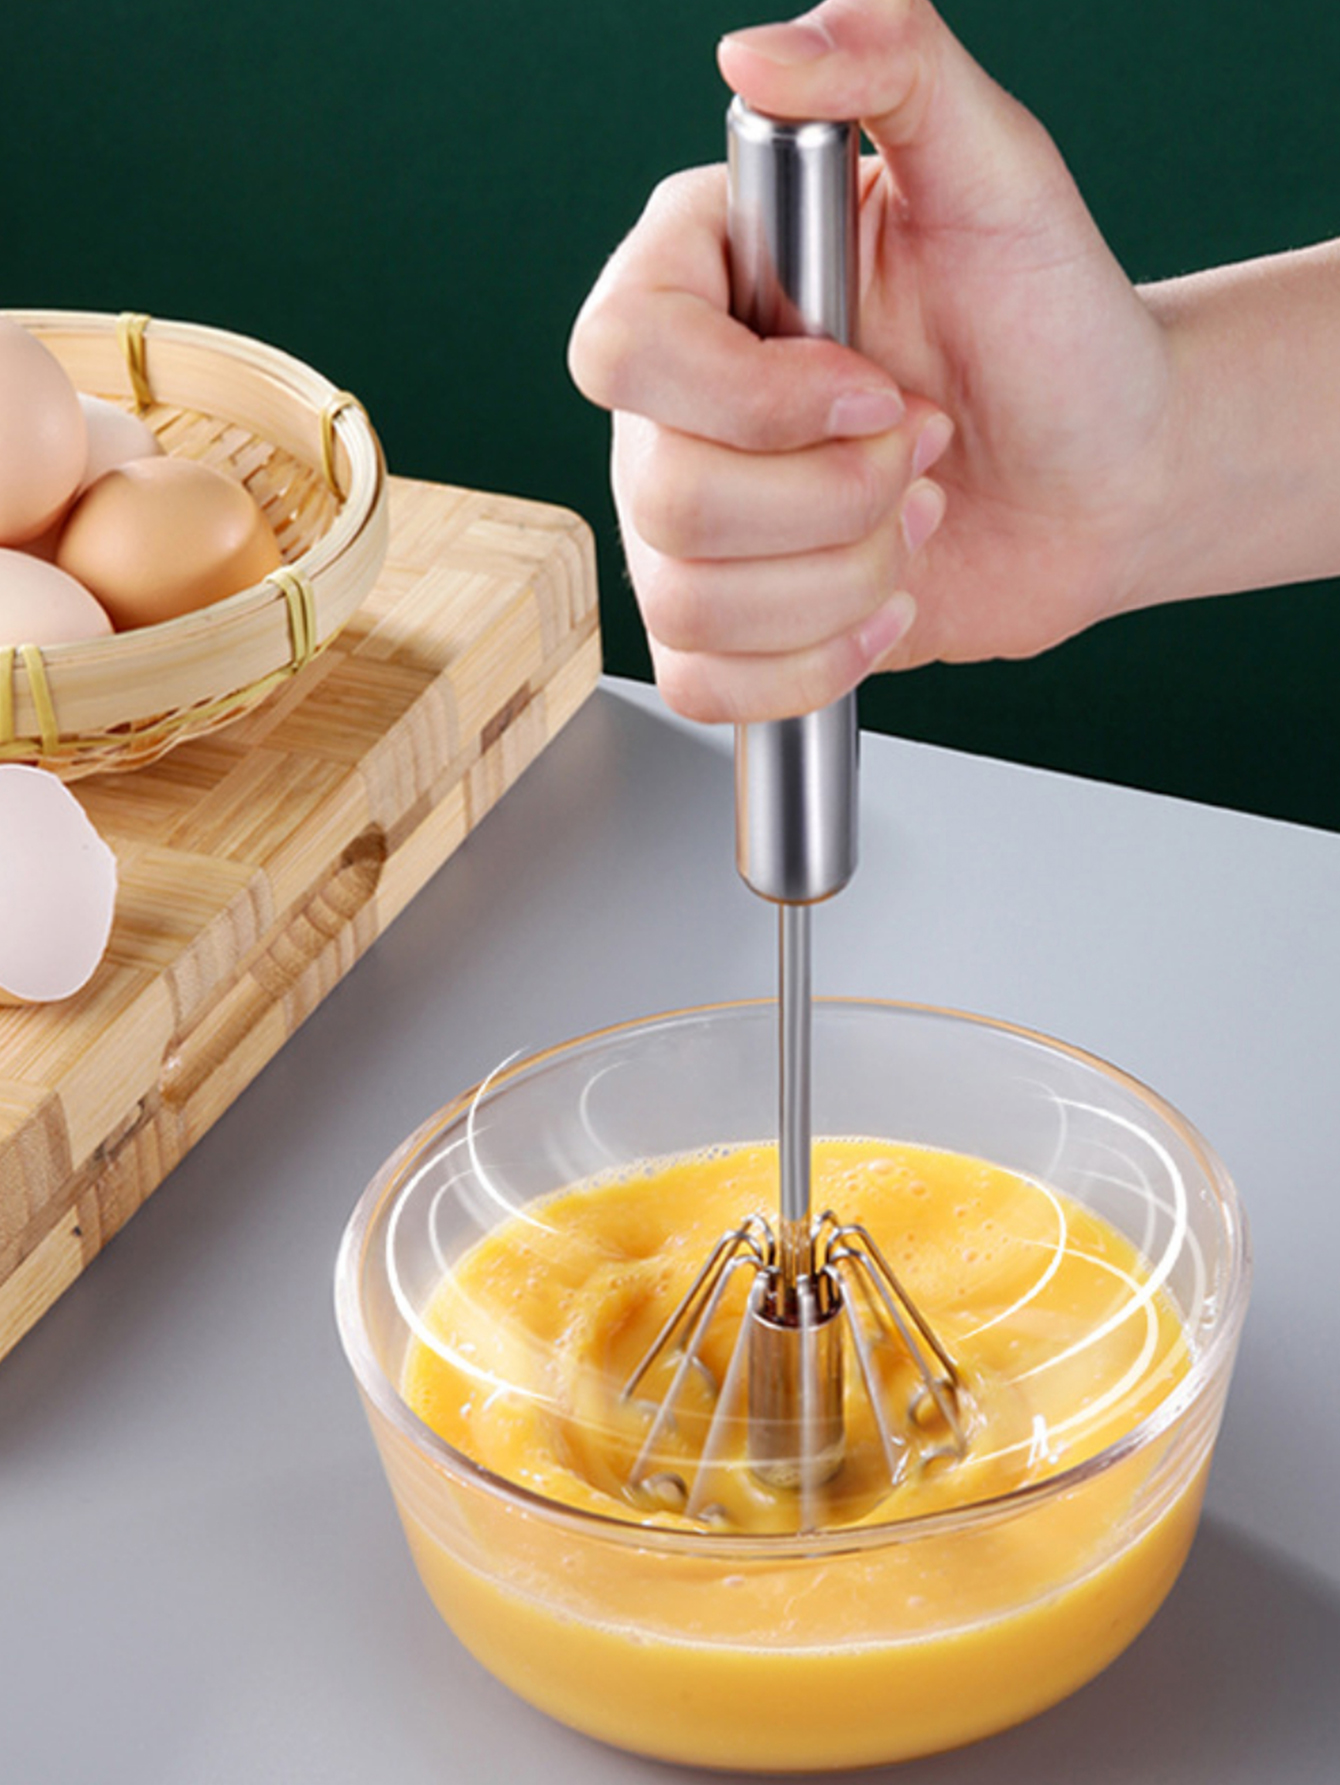 Egg Whisk Egg Beater Stainless Surround helixSpring Coil Egg Frother, Milk  and Egg- Kitchen Utensils for Blending,Magic Hand Held Sauce Stirrer